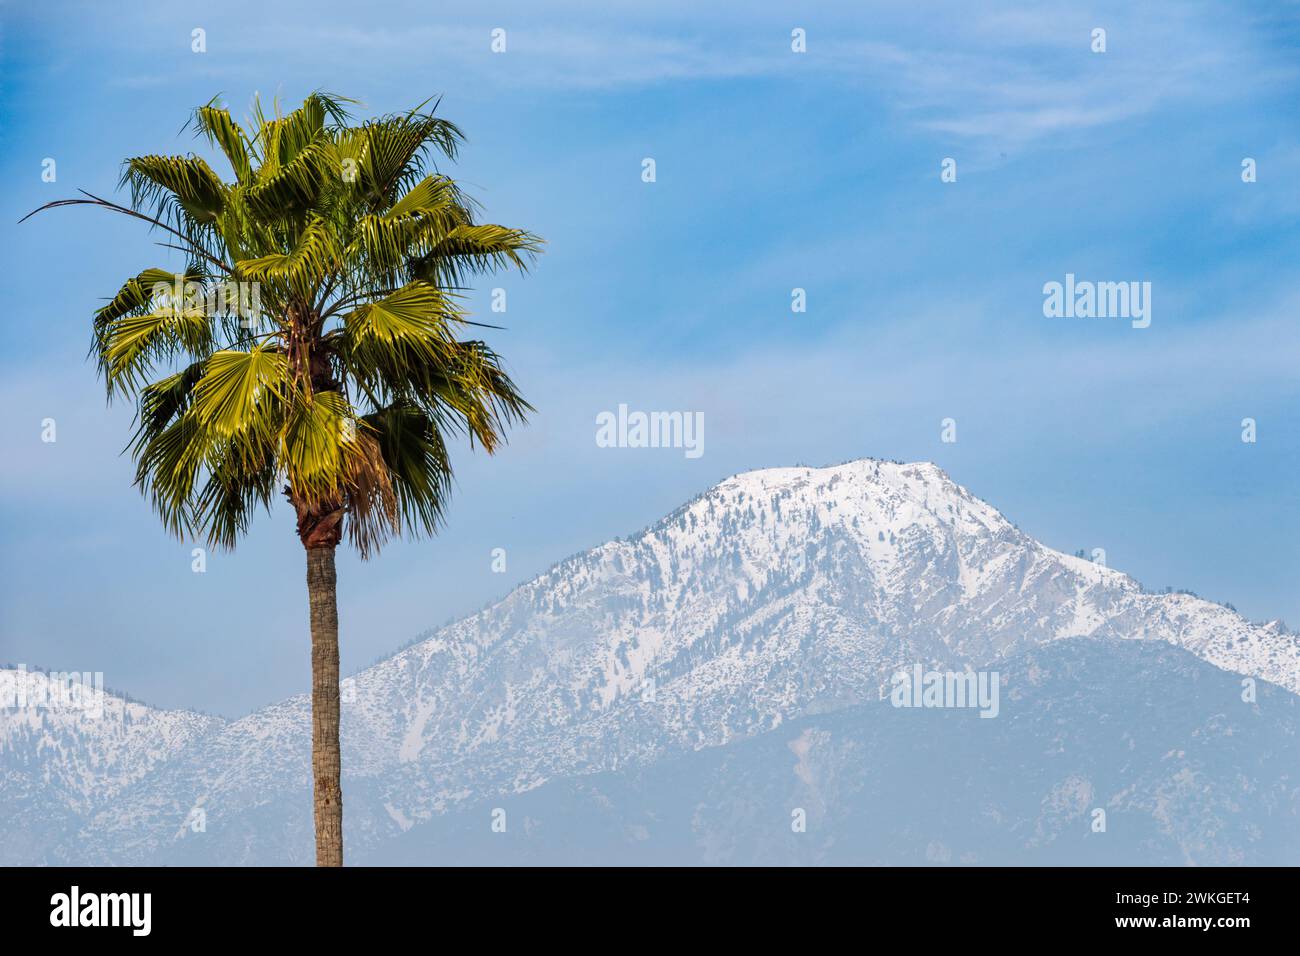 Premier plan : palmier. Terrain intermédiaire : contreforts de San Gabriel. Contexte : Cucamonga Peak enneigé de 8 862 pieds dans le sud de la Californie. Banque D'Images